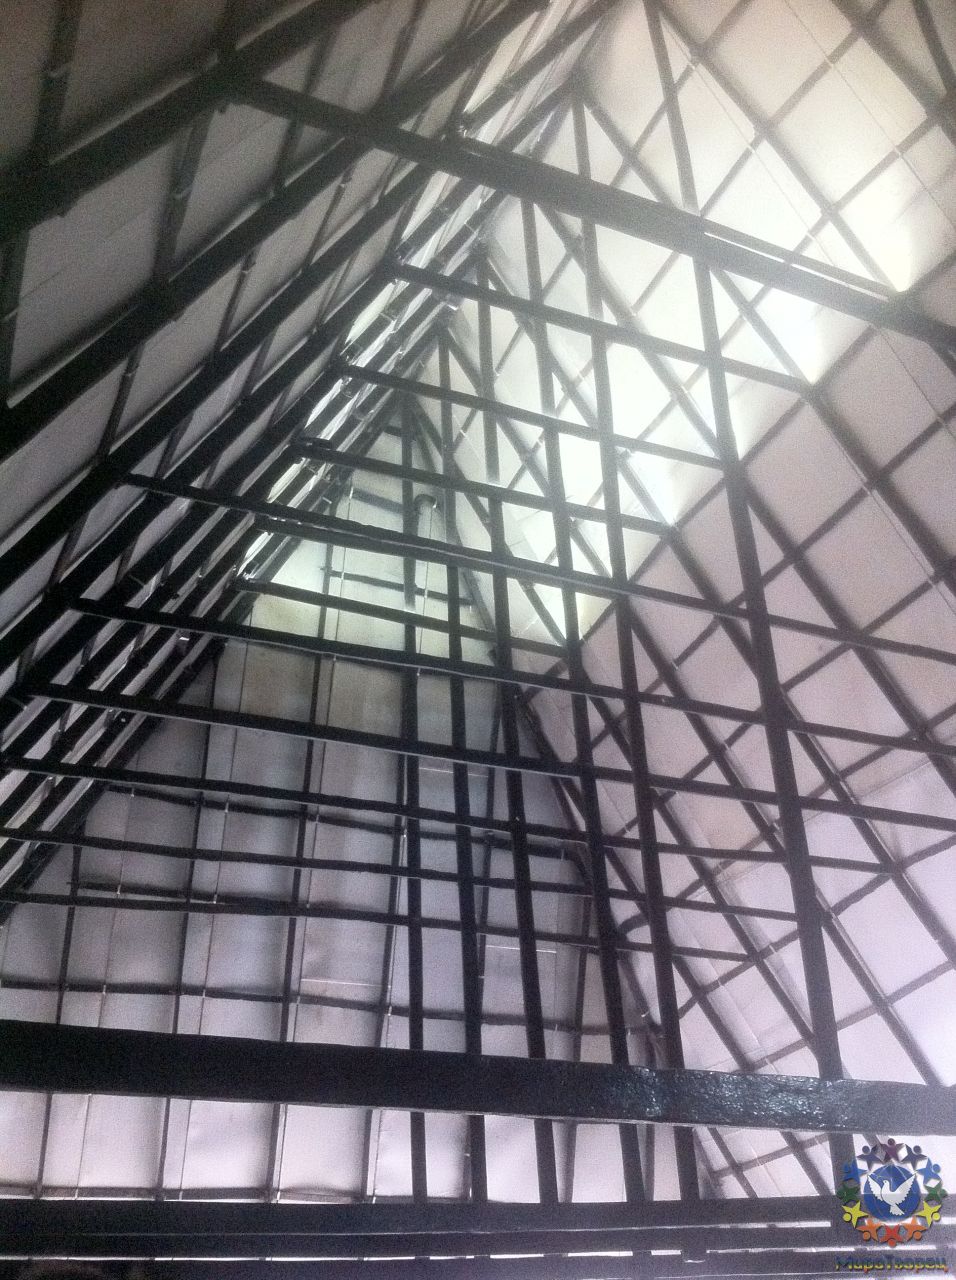 Конструкция напоминает пирамиду, очень интересное место, вибрирующая энергетика  - Поездка гр.Сфера в Невьянск